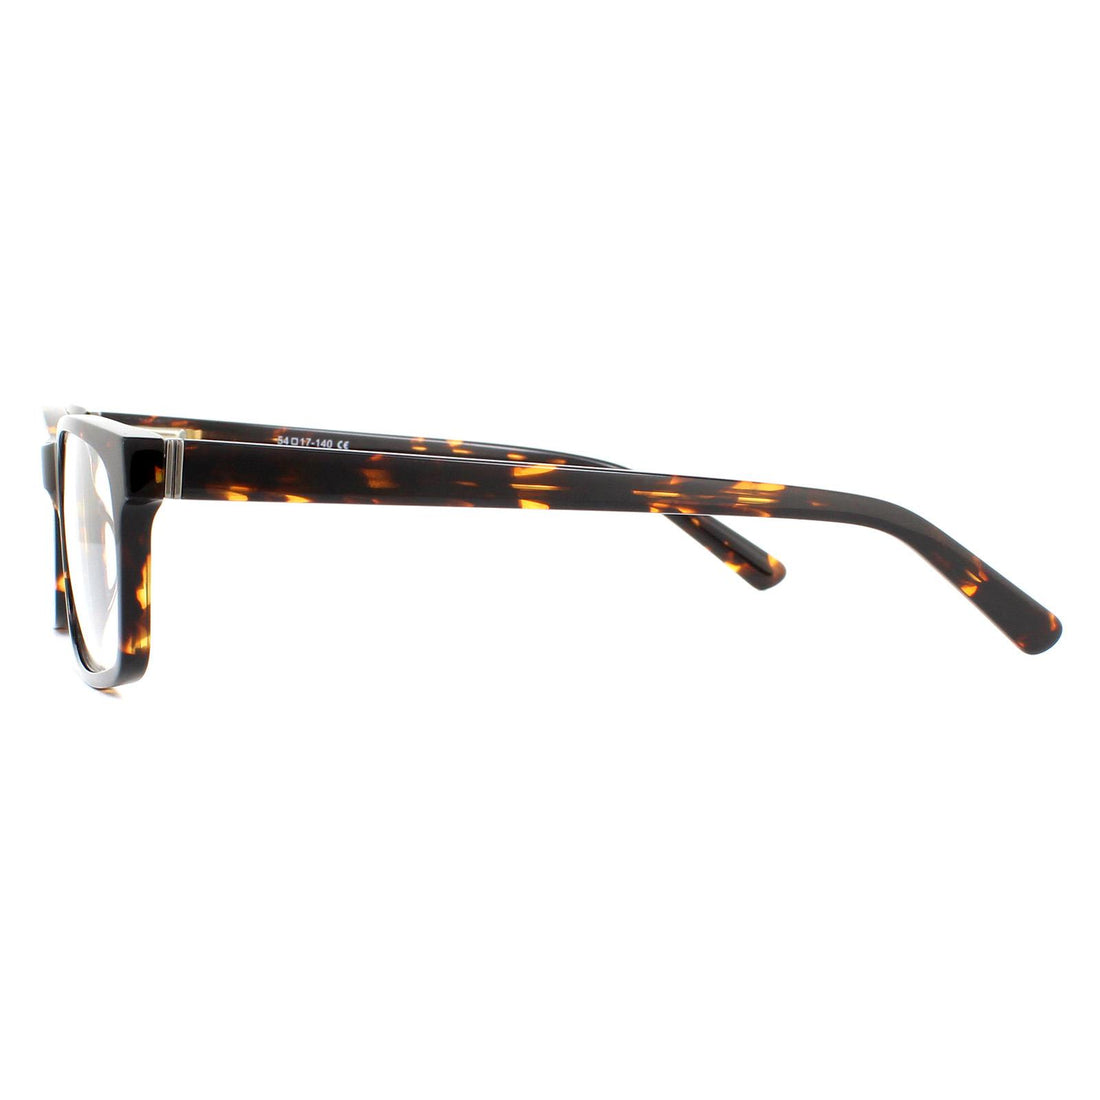 SunOptic Glasses Frames A70 D Turtle Brown Men Women